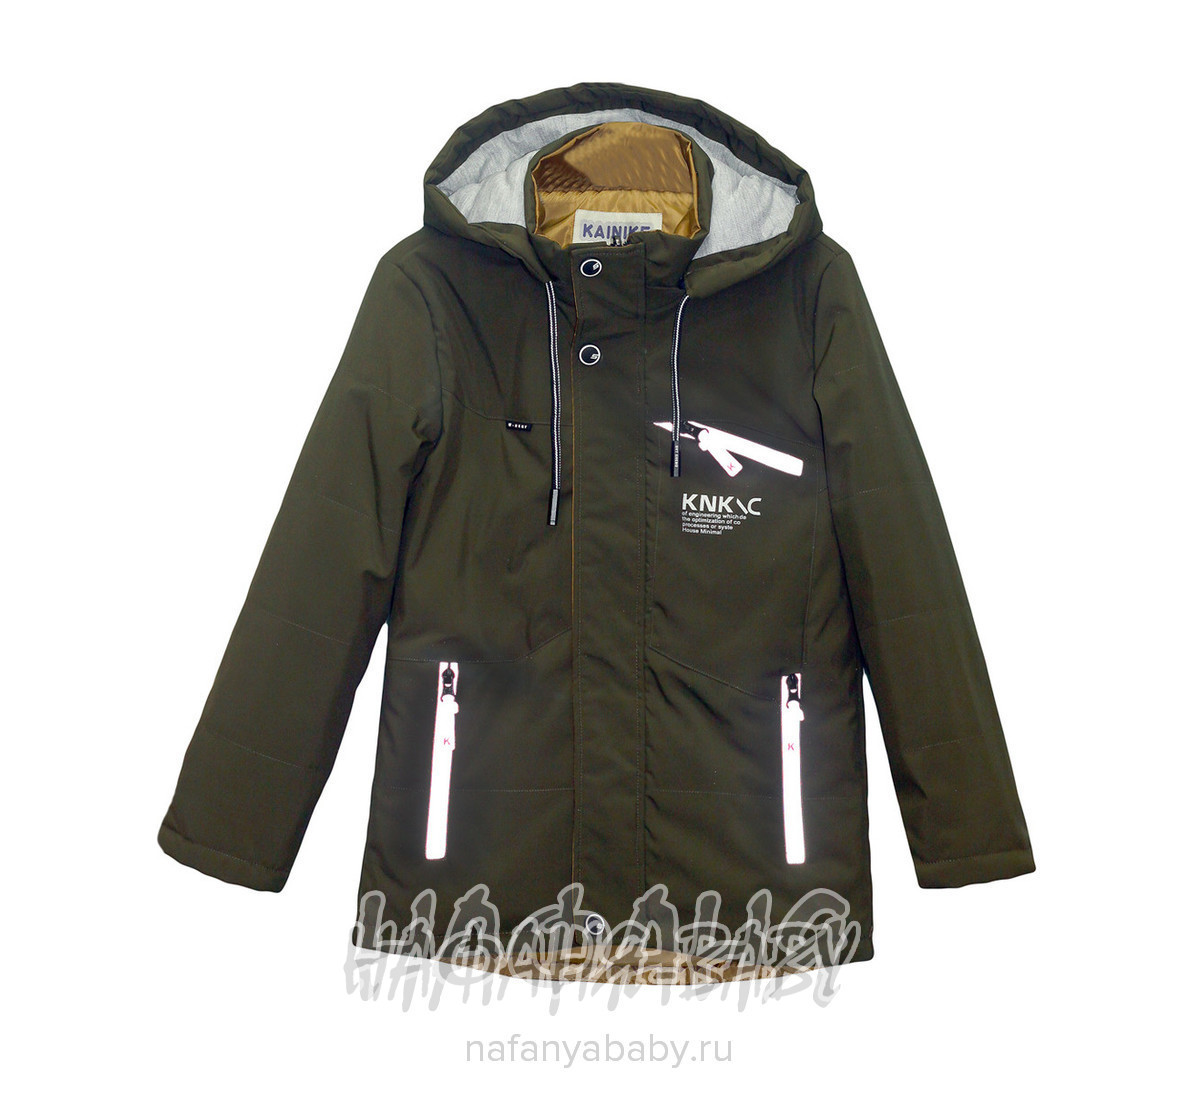 Подростковая демисезонная куртка KAINIKE, купить в интернет магазине Нафаня. арт: 1803.